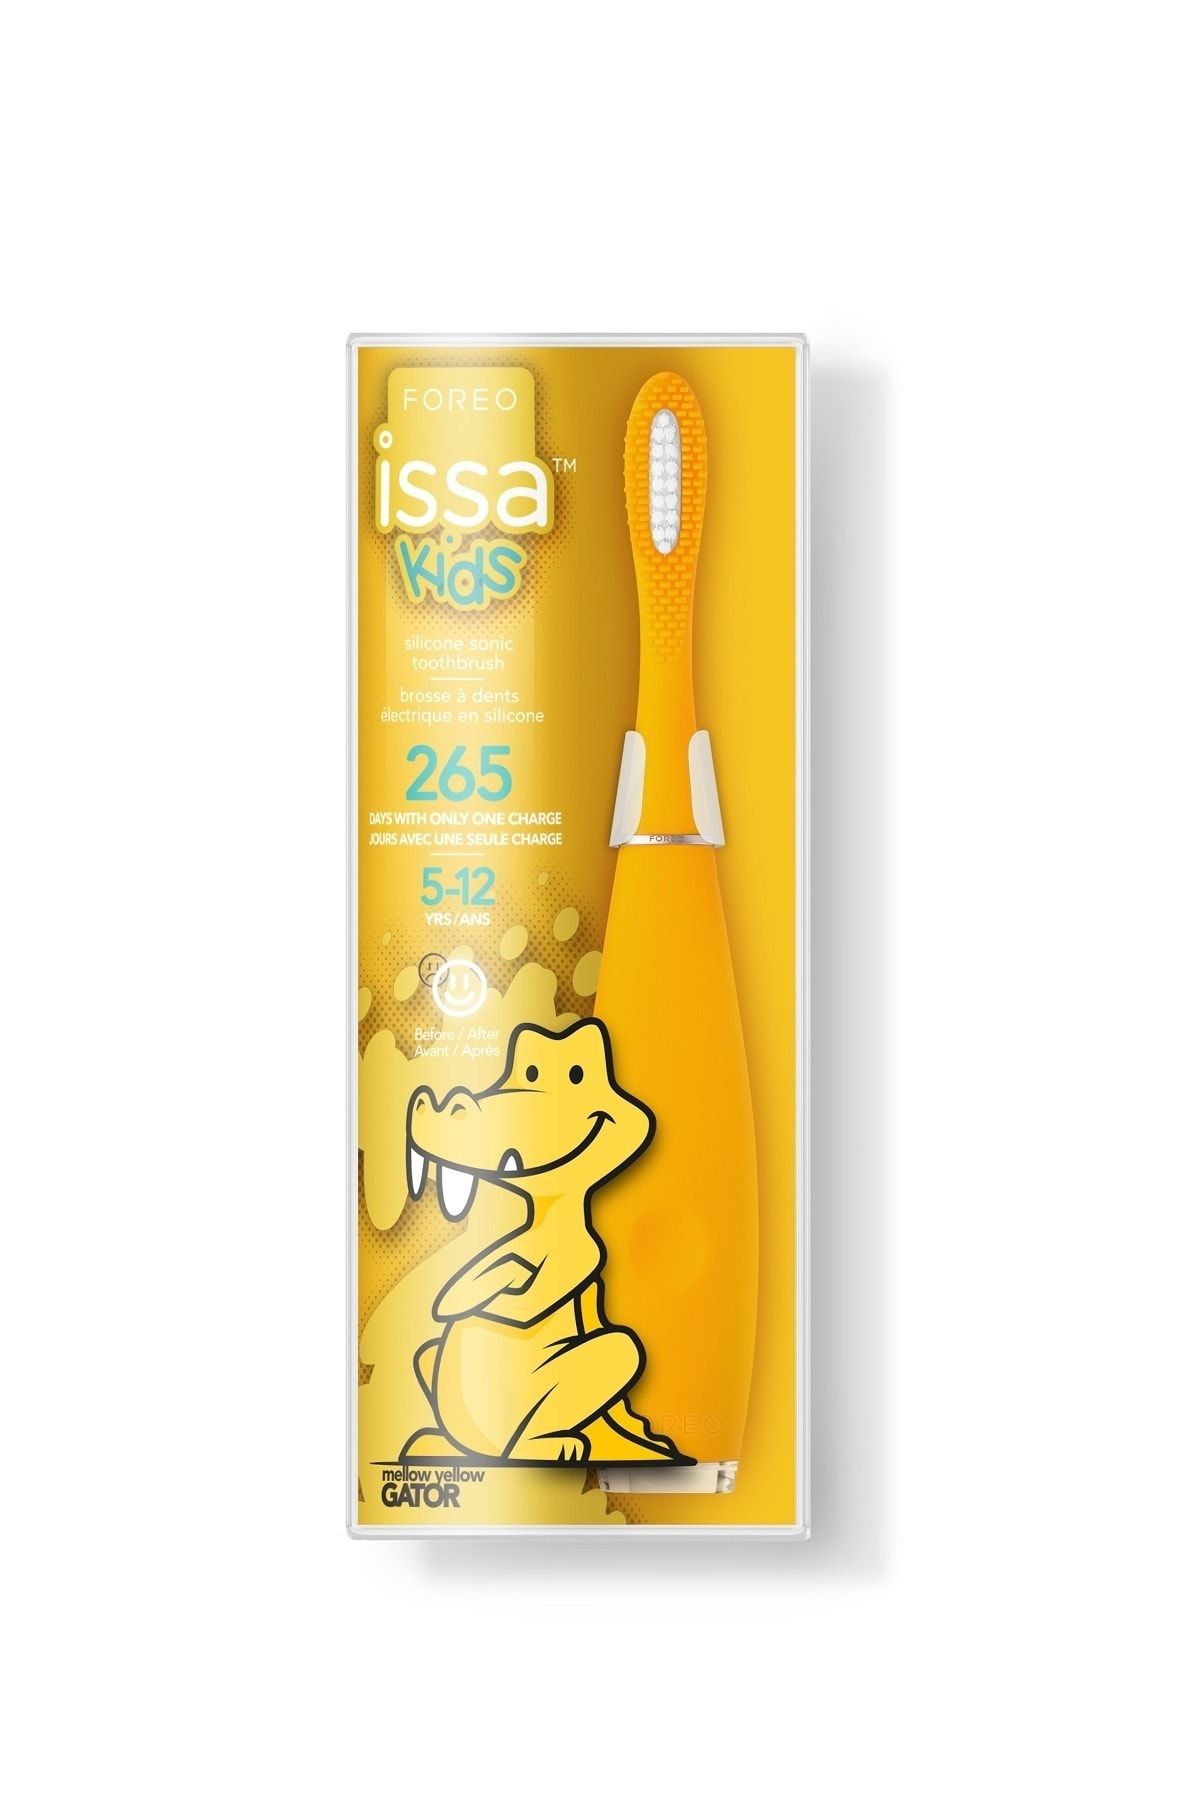 Foreo Issa™ Kids Çocuk Diş Fırçası (5-12 Yaş Için), Mellow Yellow Gator